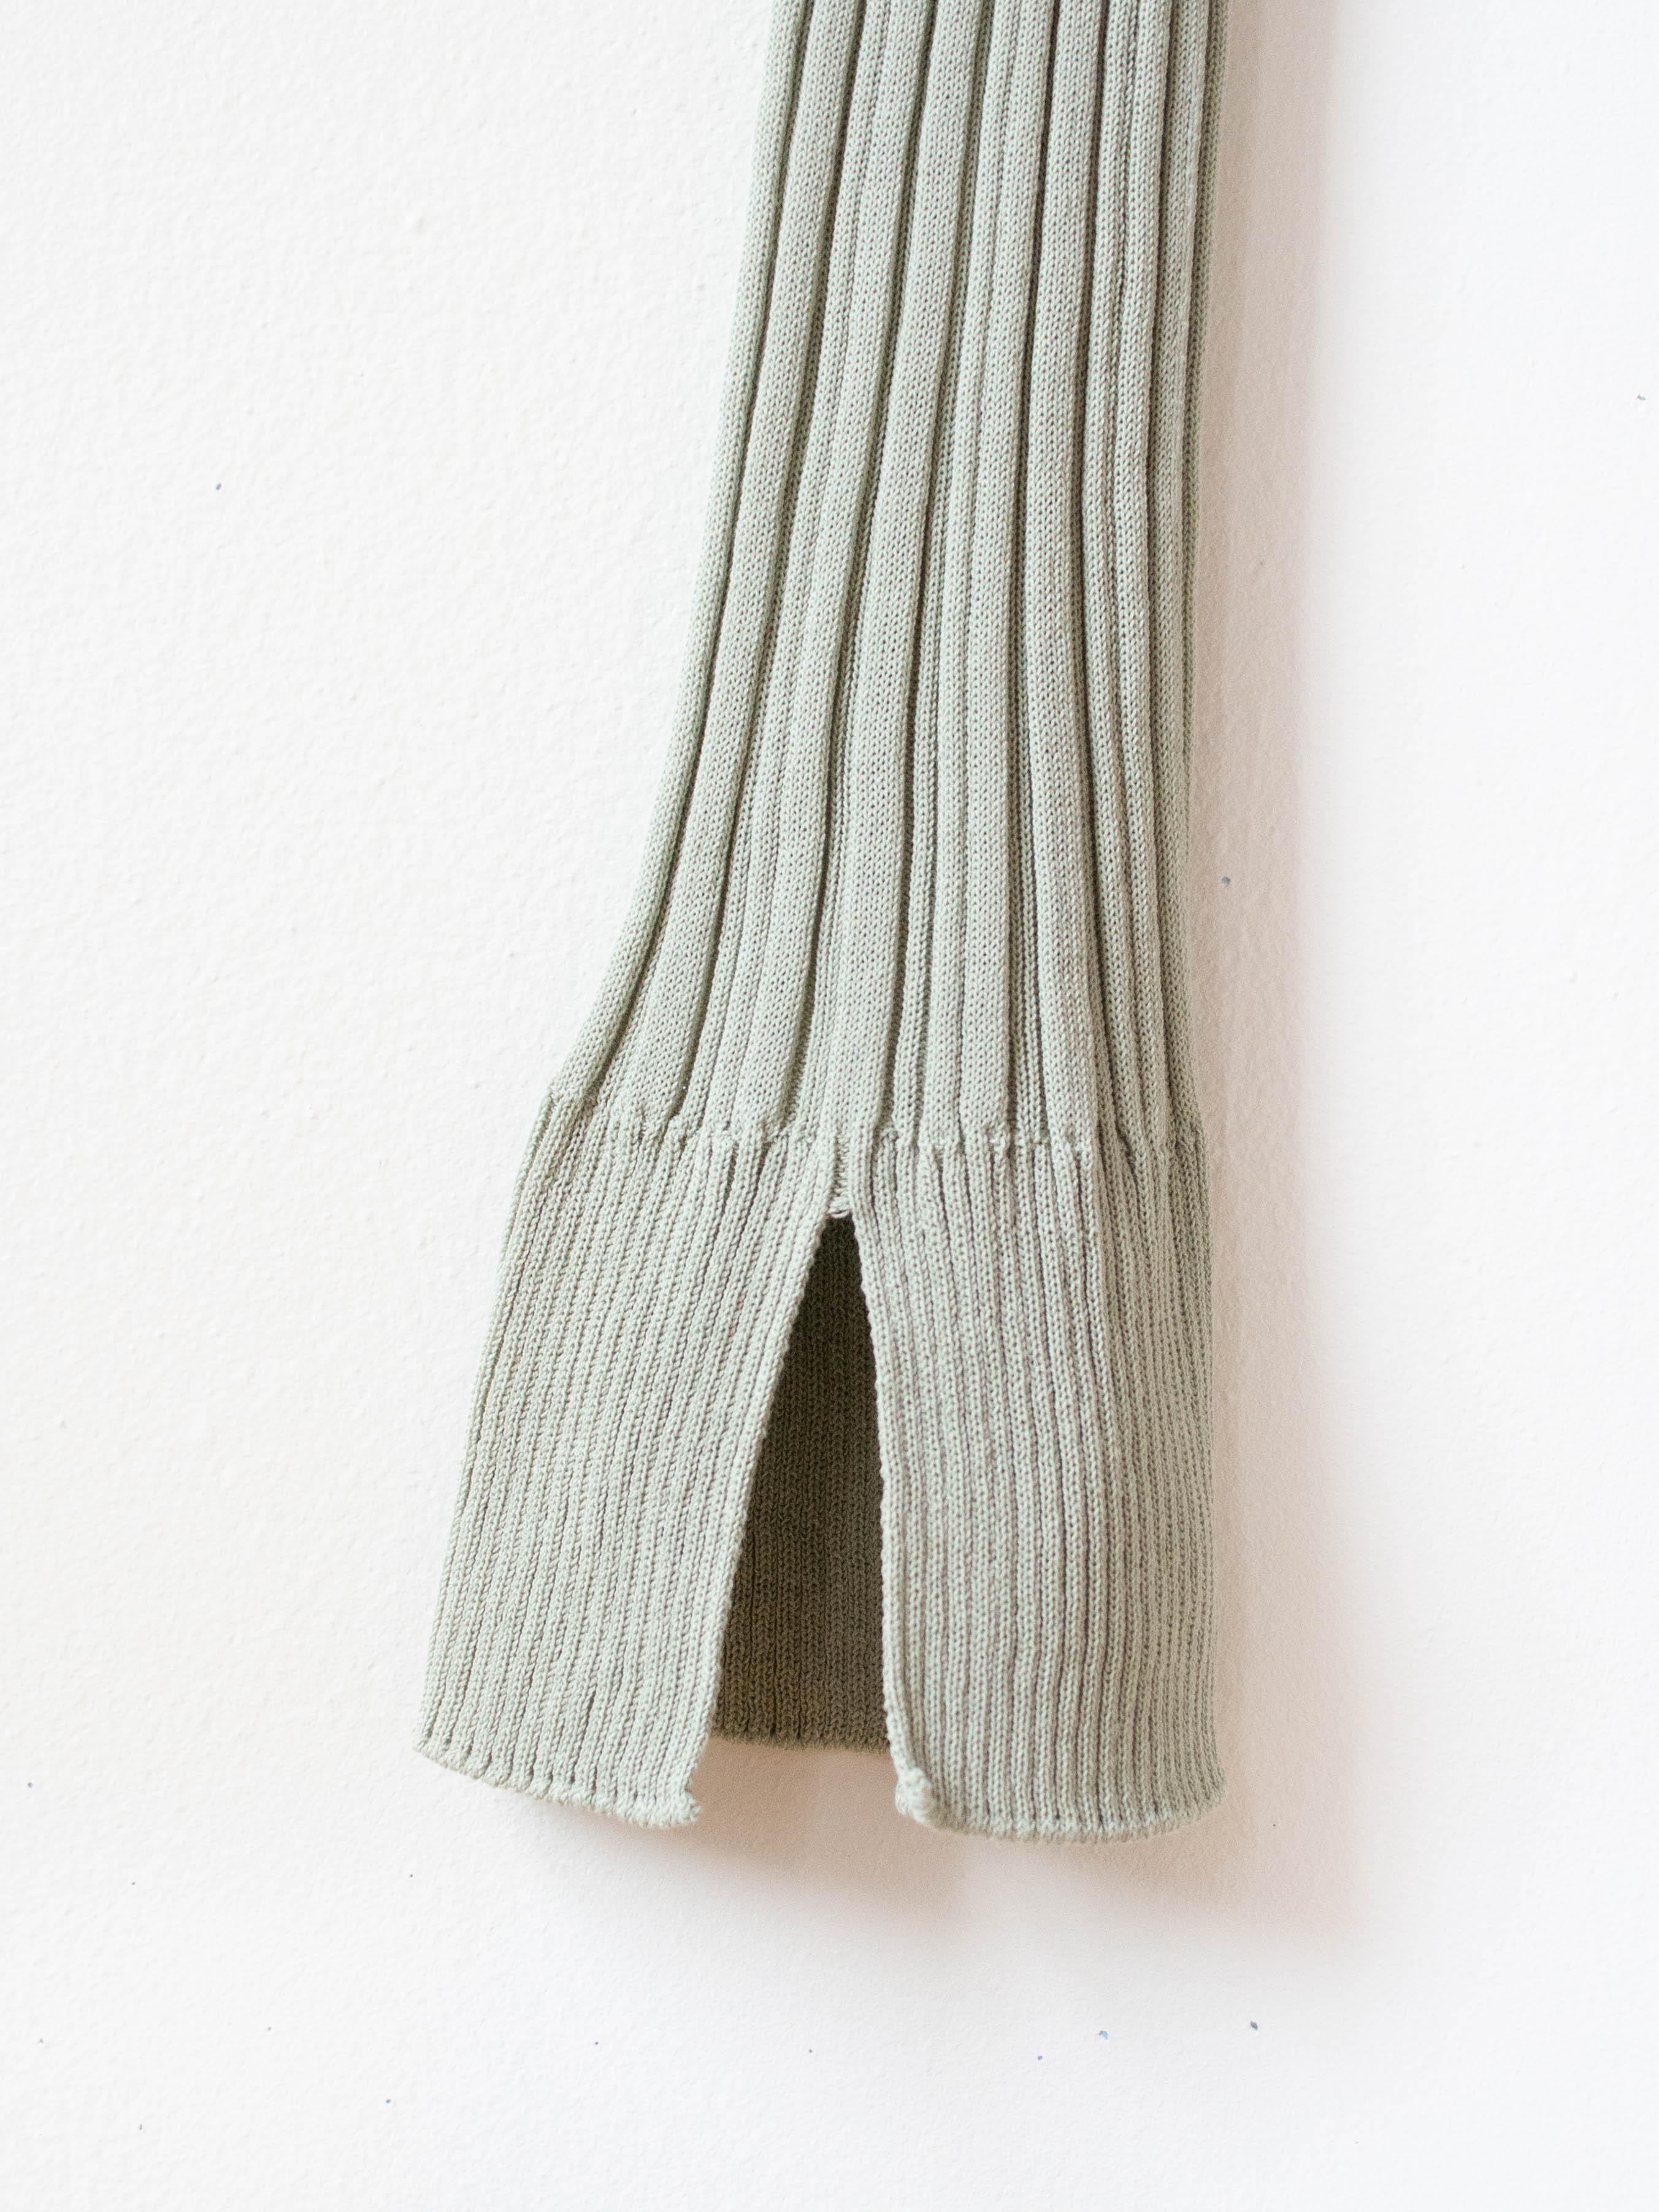 Namu Shop - Unfil High Twist Cotton Ribbed Knit Leggings - Smokey Green